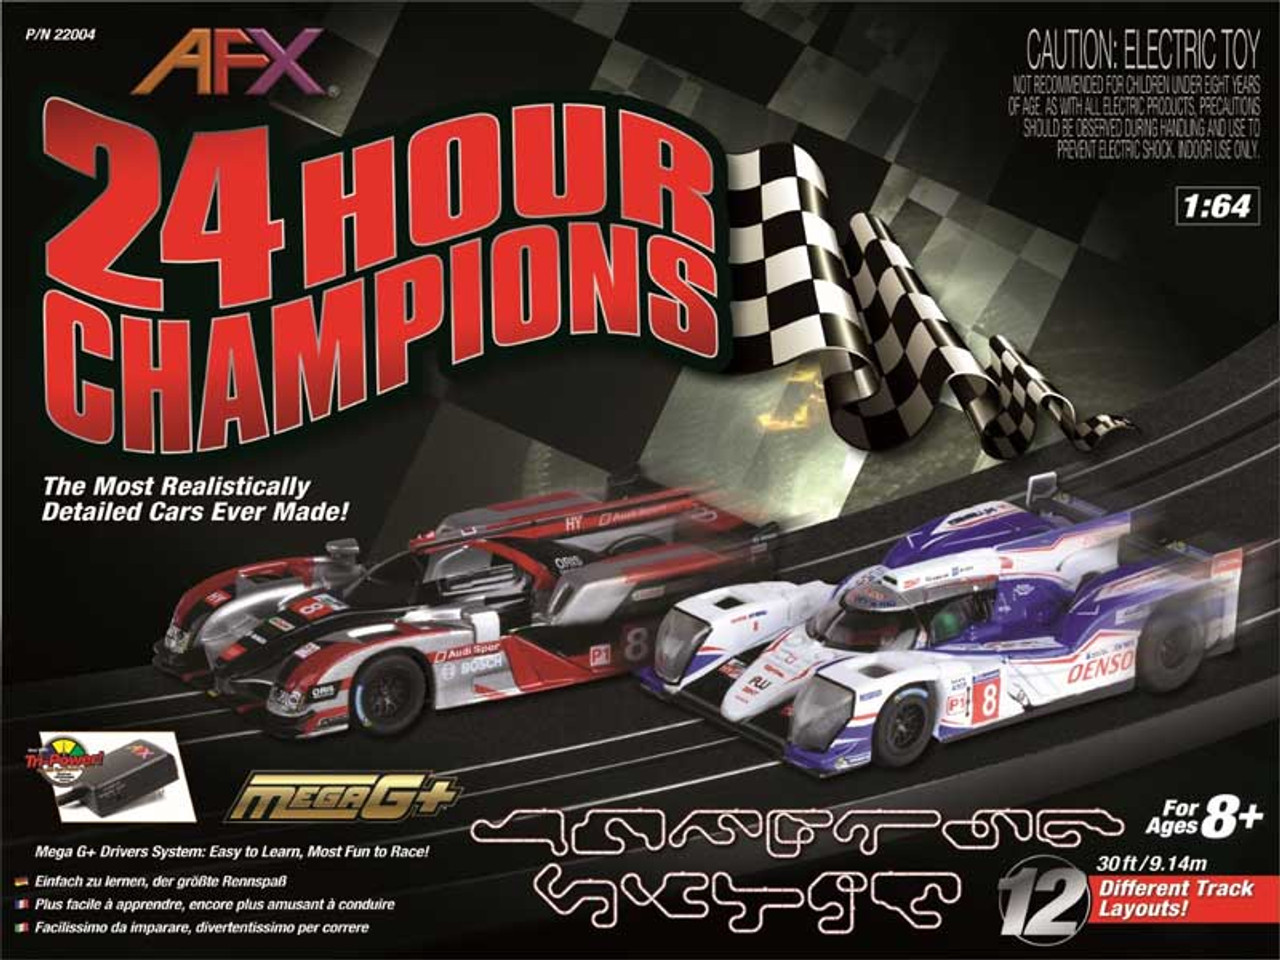 afx slot car racing